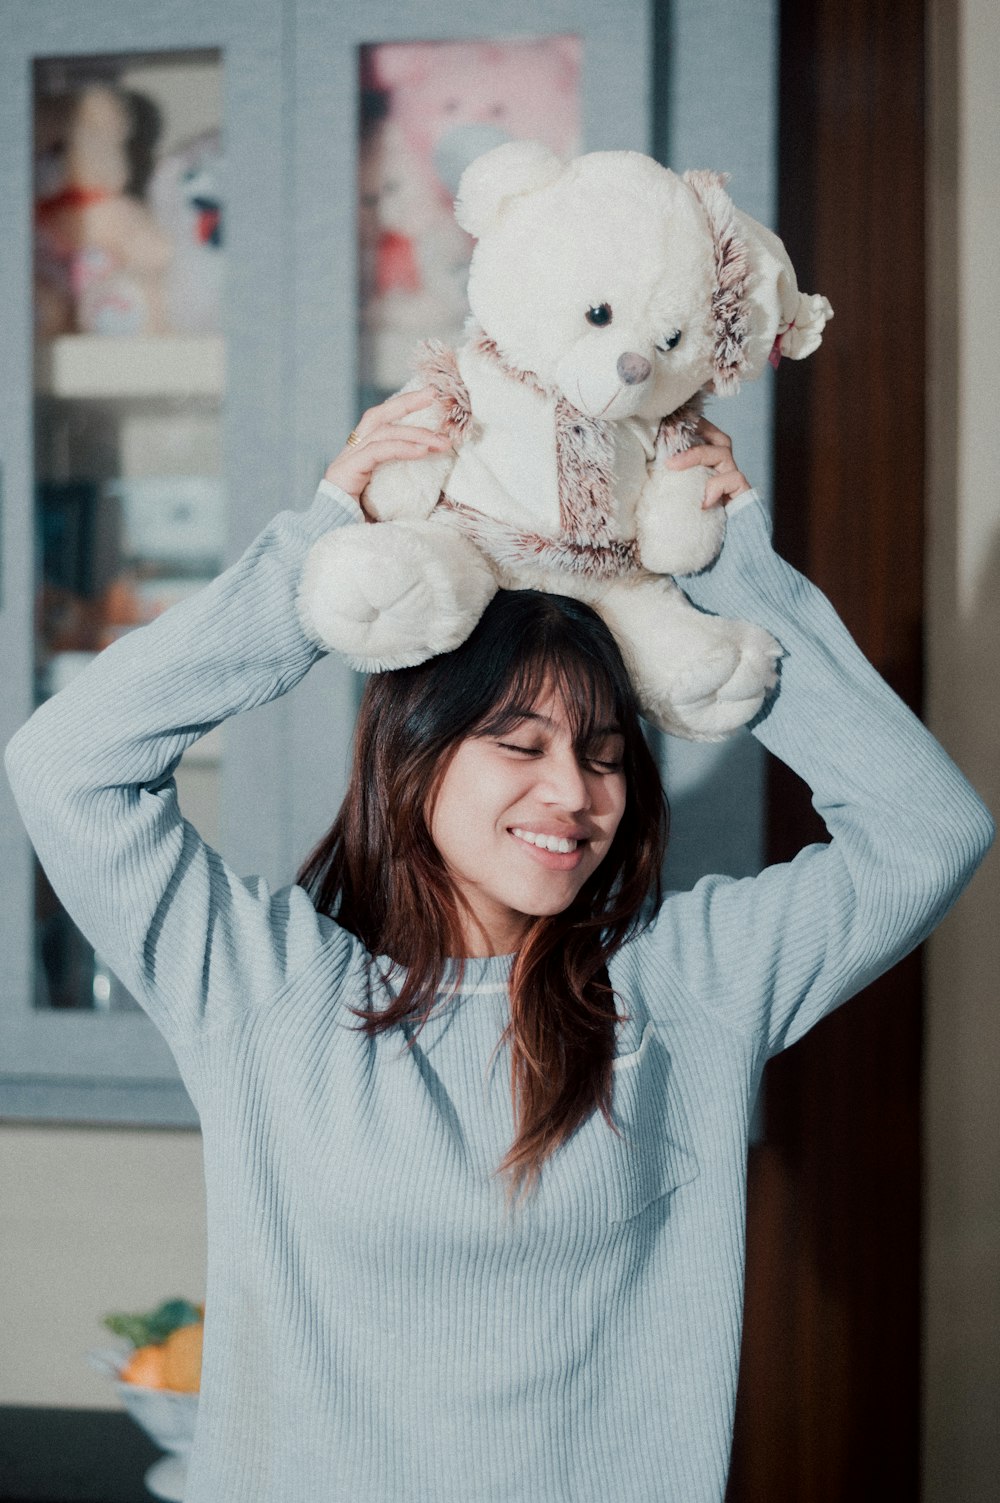 a woman holding a teddy bear on her head